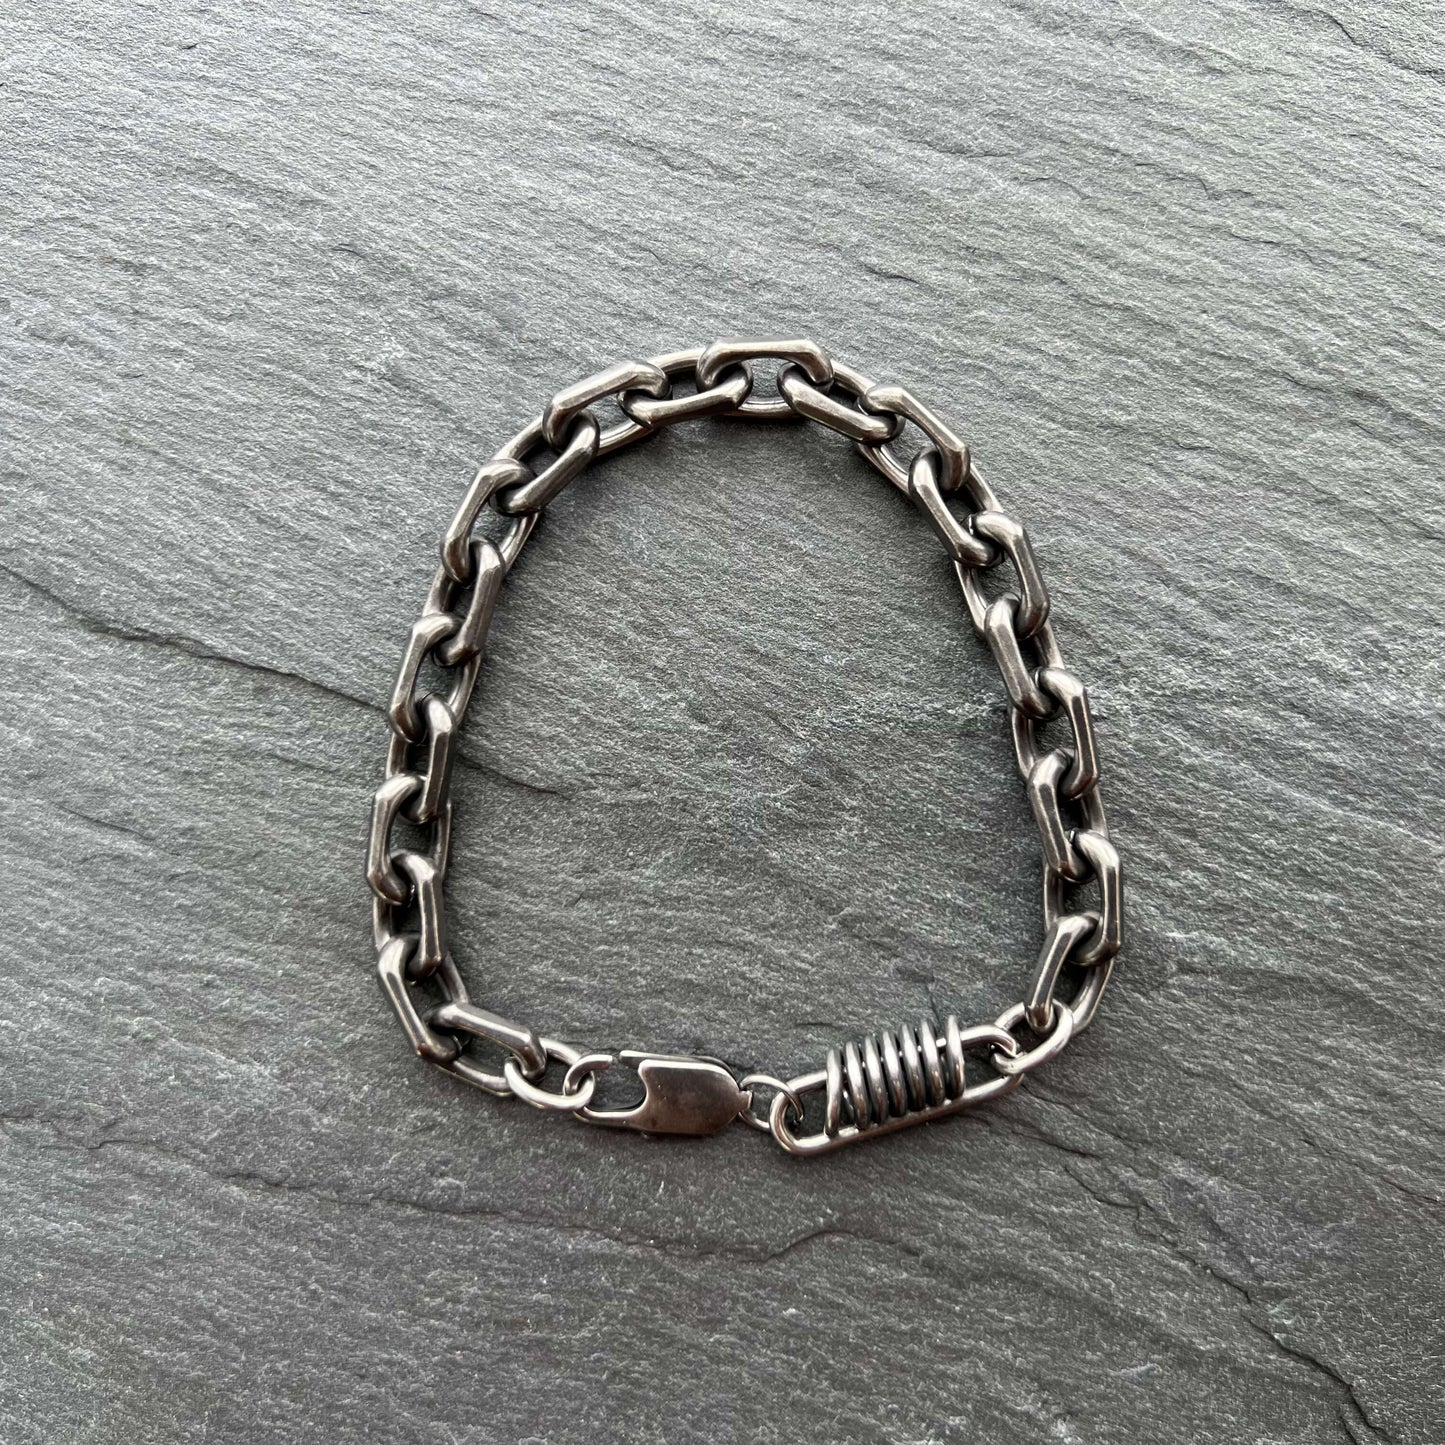 Rustic Cable Bracelet